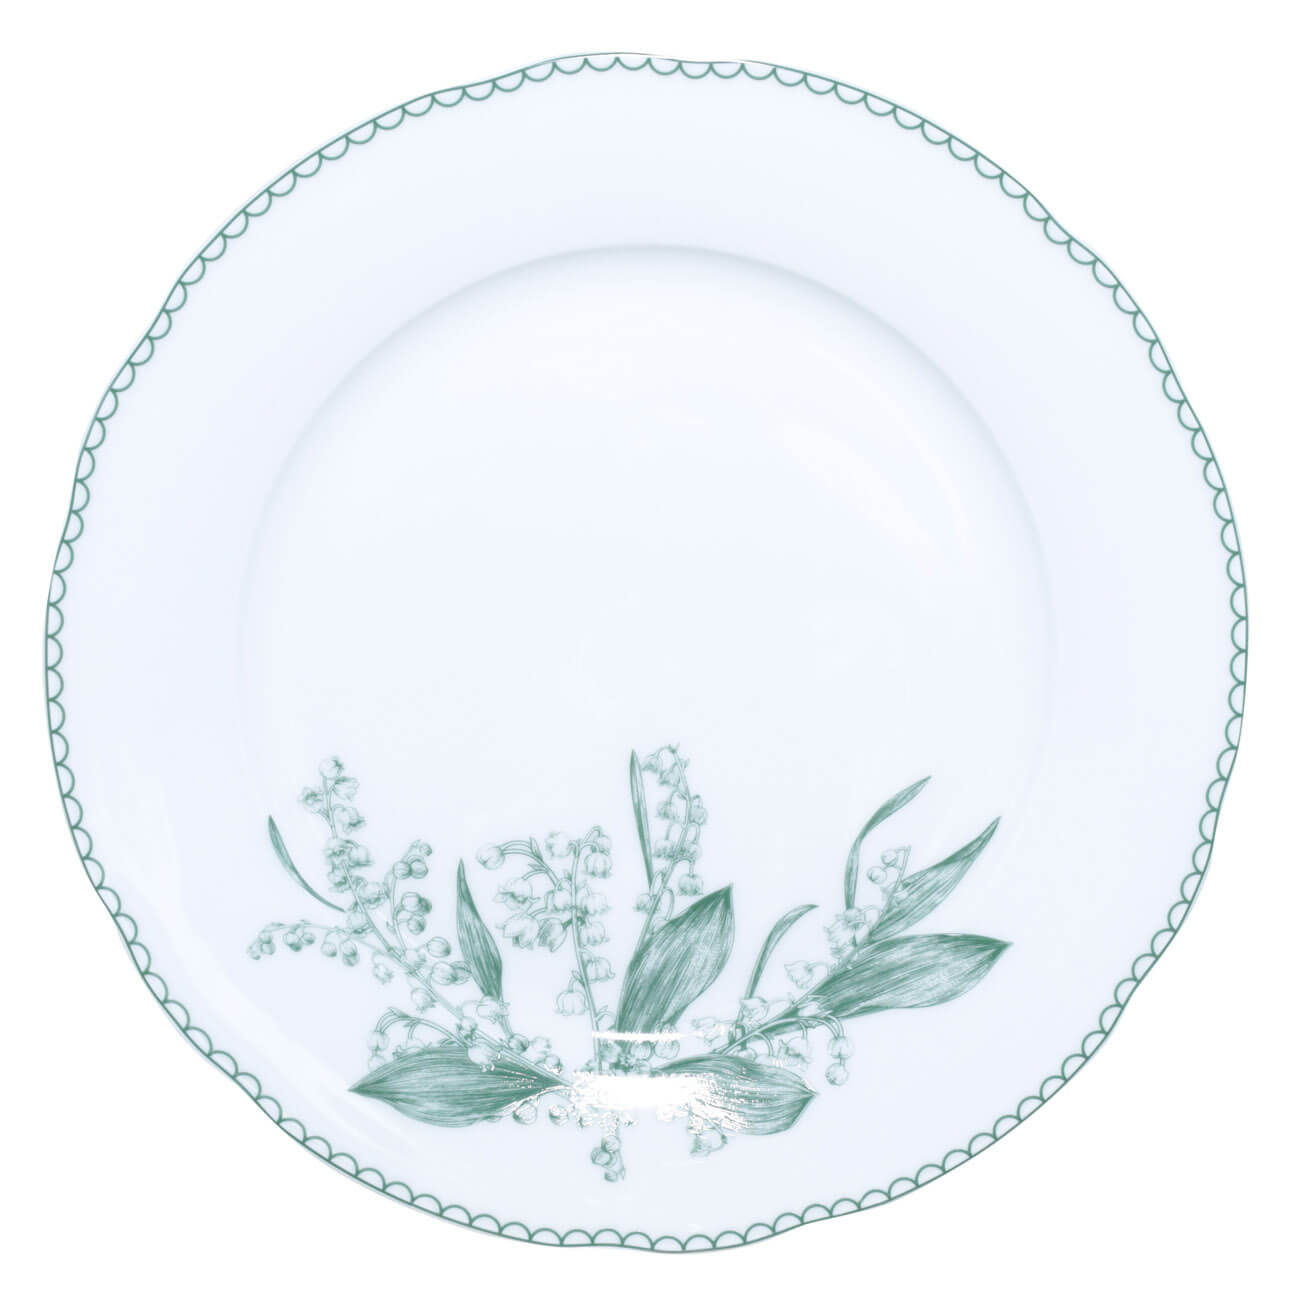 Тарелка обеденная, 27 см, фарфор F, белая, Весенние ландыши, May-lily тарелка обеденная 27 см фарфор f белая весенние ландыши may lily